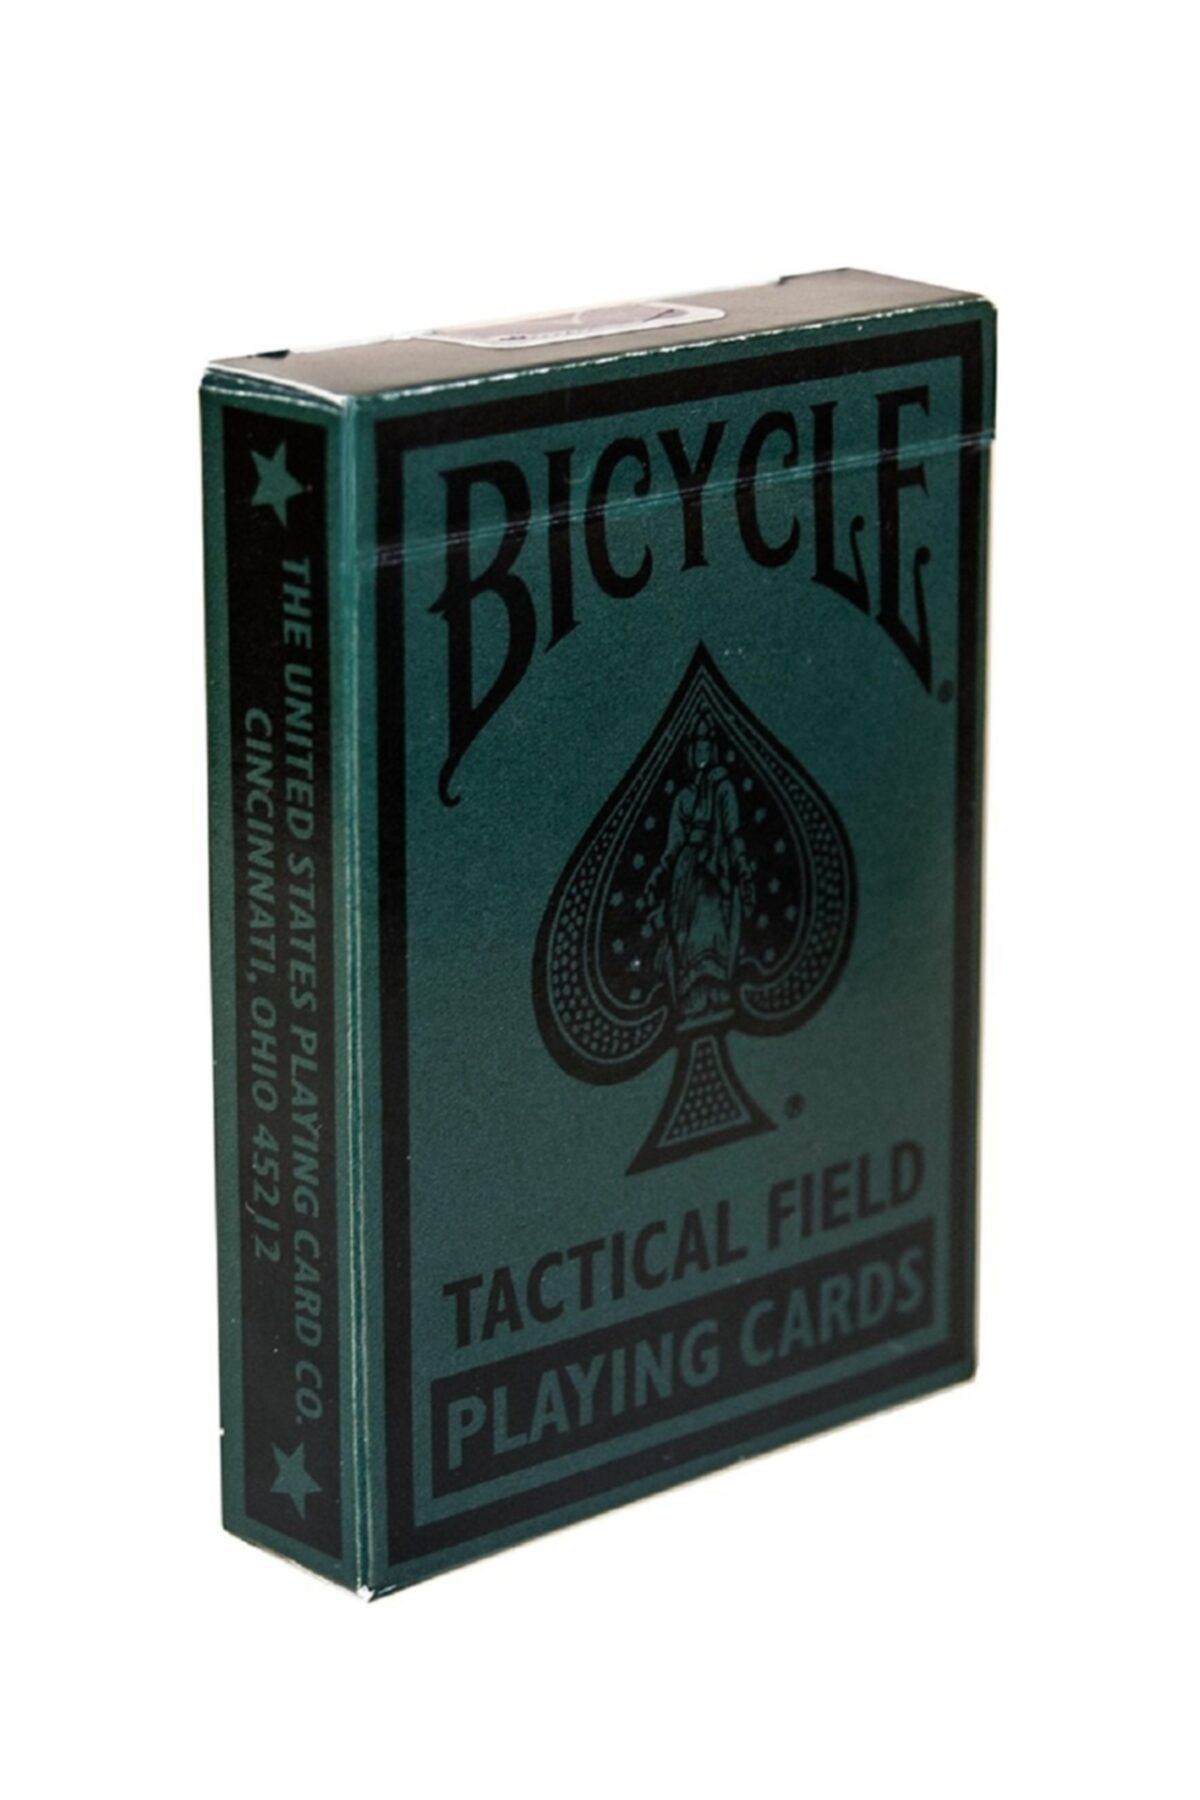 Bicycle Tactical Field Koleksiyoner Iskambil Oyun Kağıdı Kartları